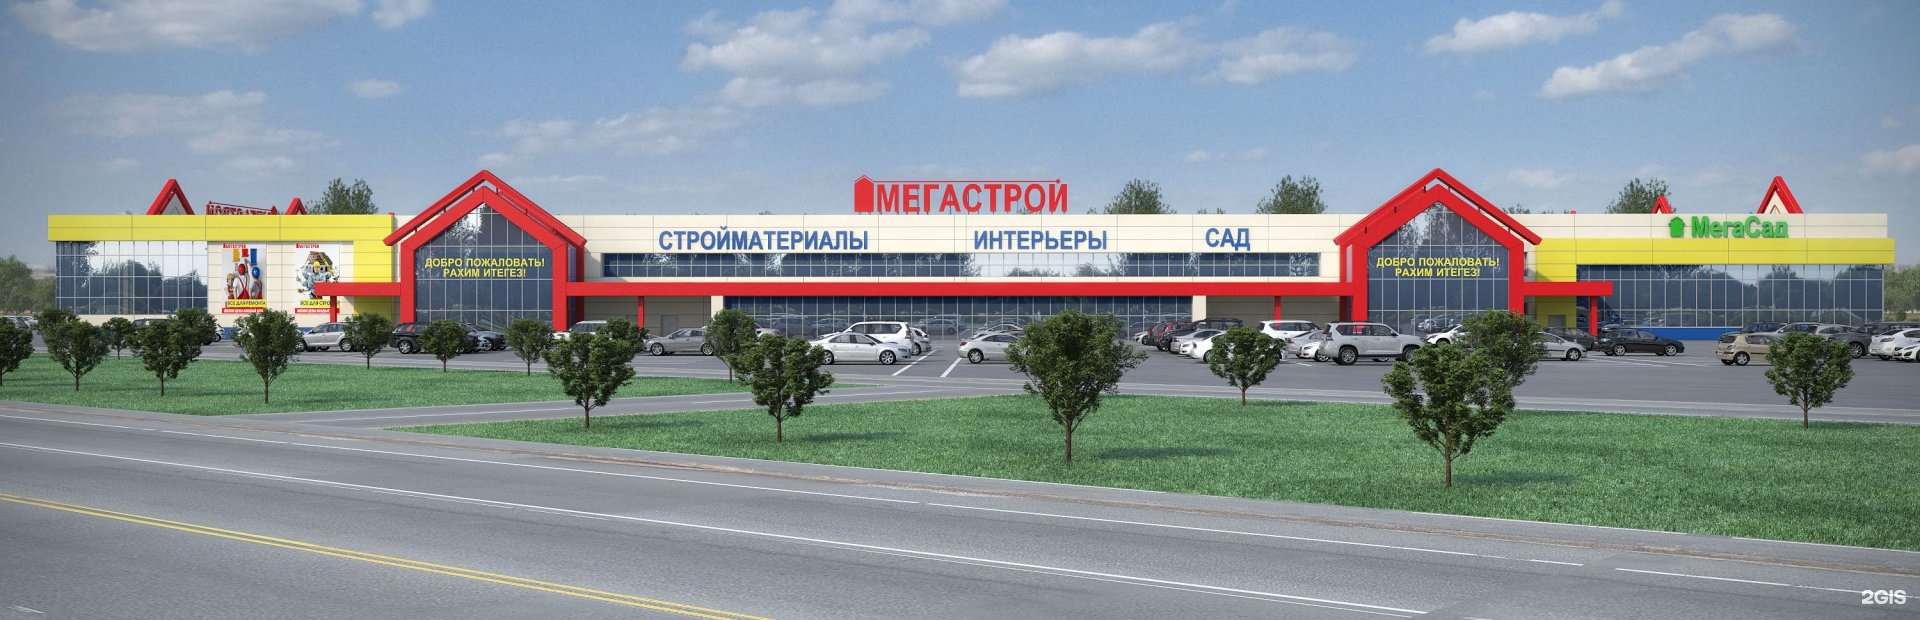 Сайт мегастрой ульяновск